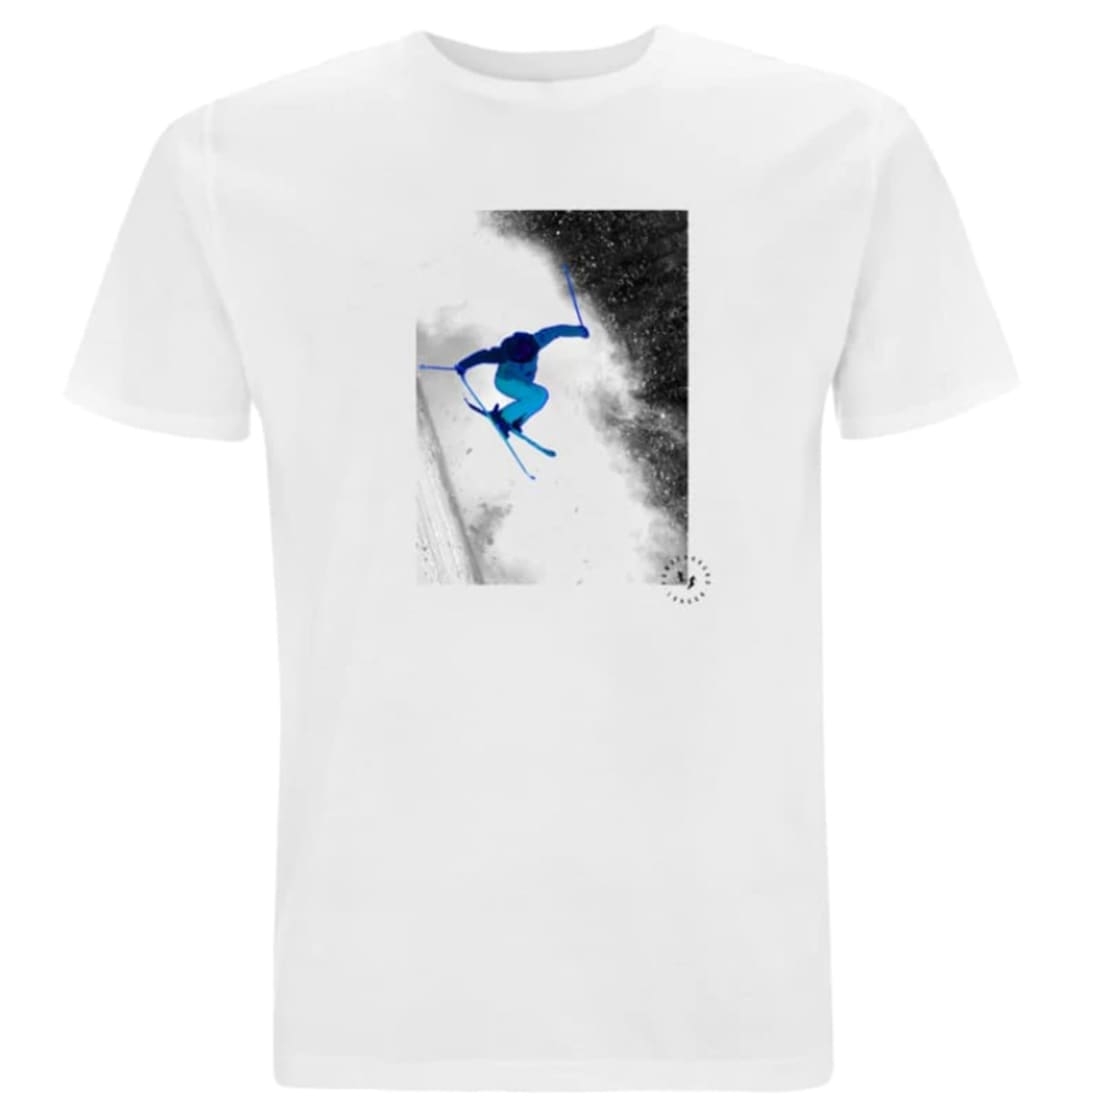 Powderhound Unisex T Shirt, Blue Skier, LARGE – Powderhound